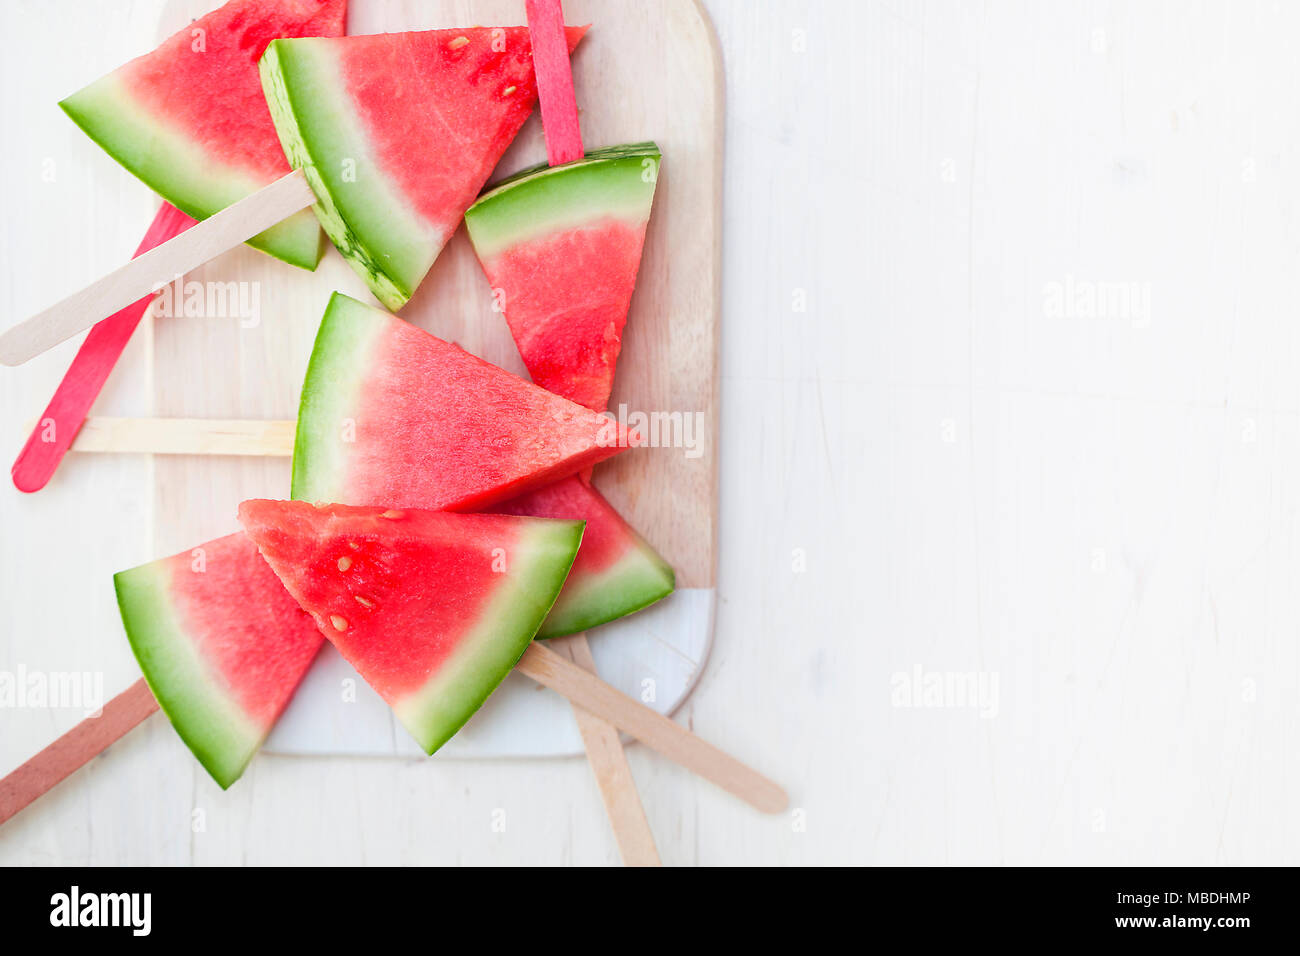 Wassermelonen Stücke auf Stiele aufgespießt Foto Stock